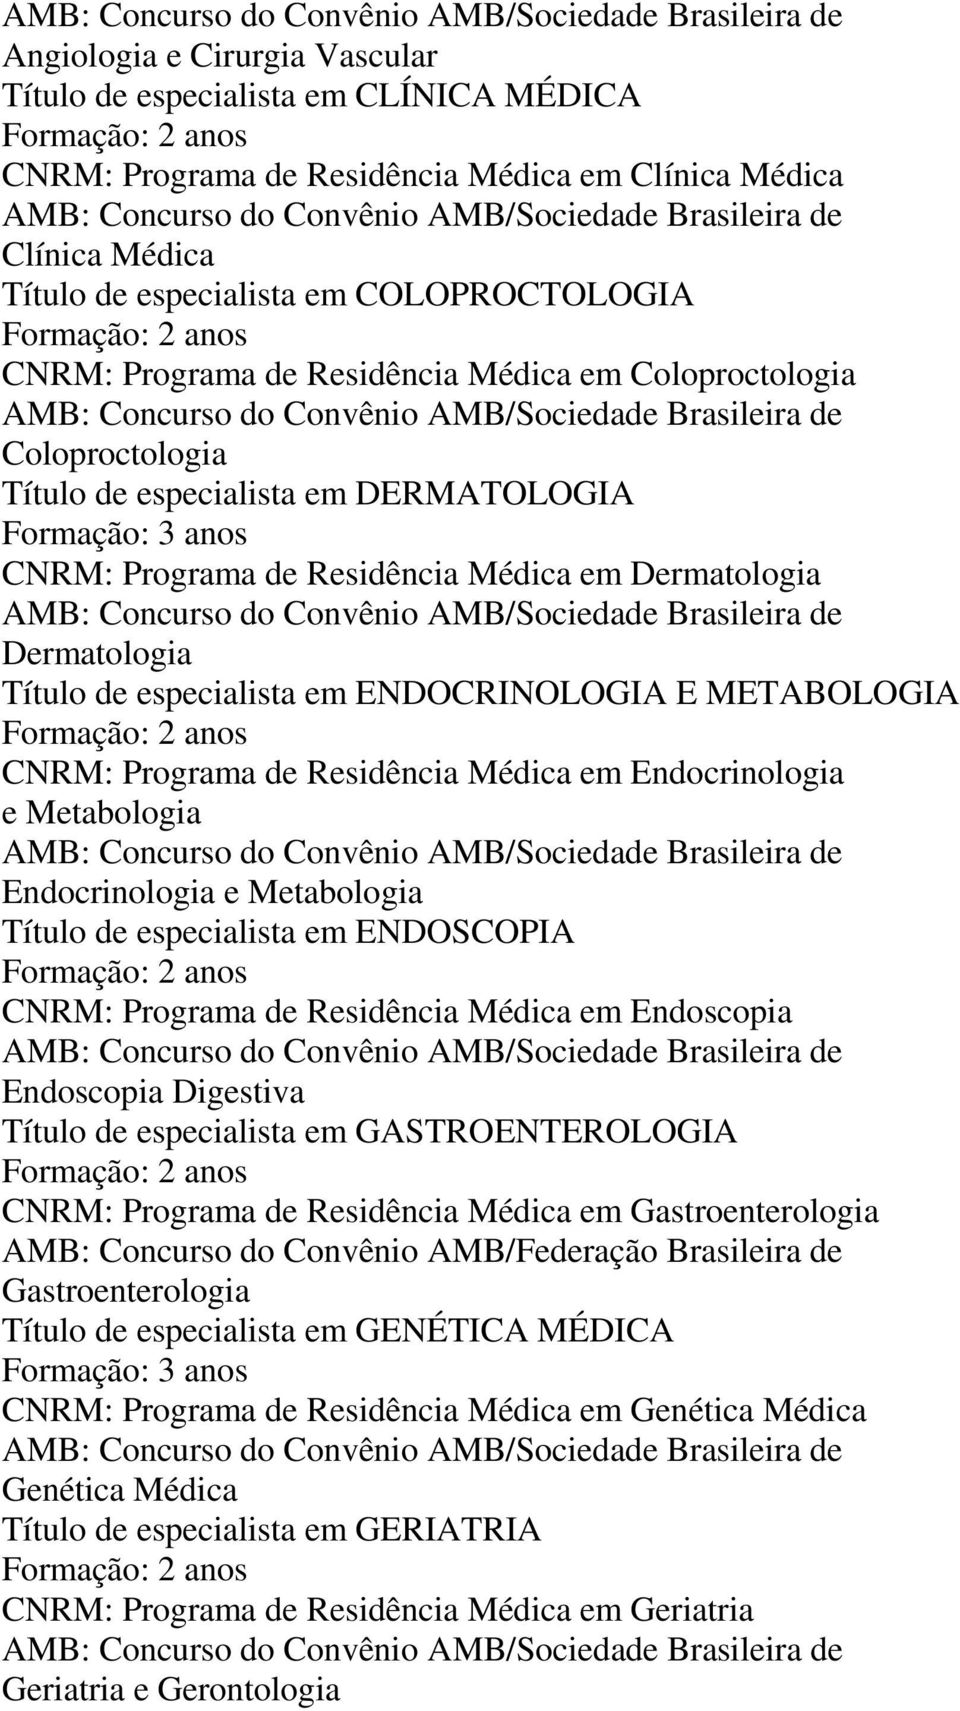 ENDOCRINOLOGIA E METABOLOGIA CNRM: Programa de Residência Médica em Endocrinologia e Metabologia Endocrinologia e Metabologia Título de especialista em ENDOSCOPIA CNRM: Programa de Residência Médica